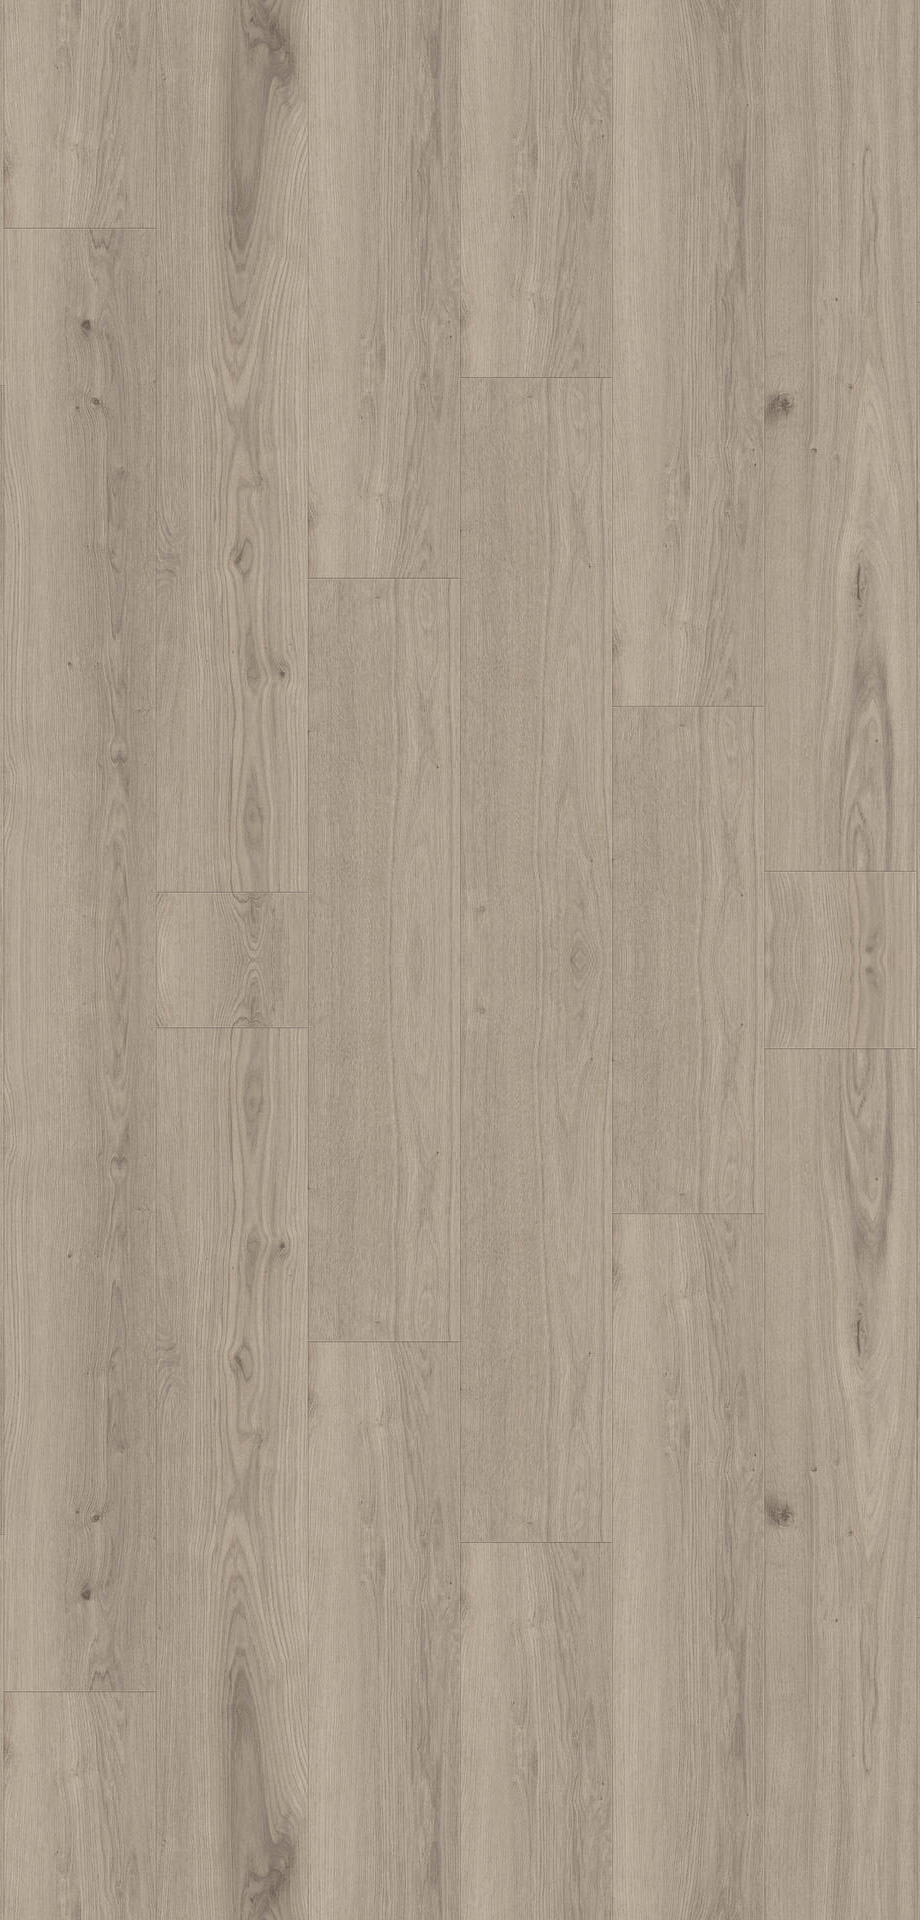 24514095 - Tarkett Supernature XXL planken 55 - Delicate oak- Clay